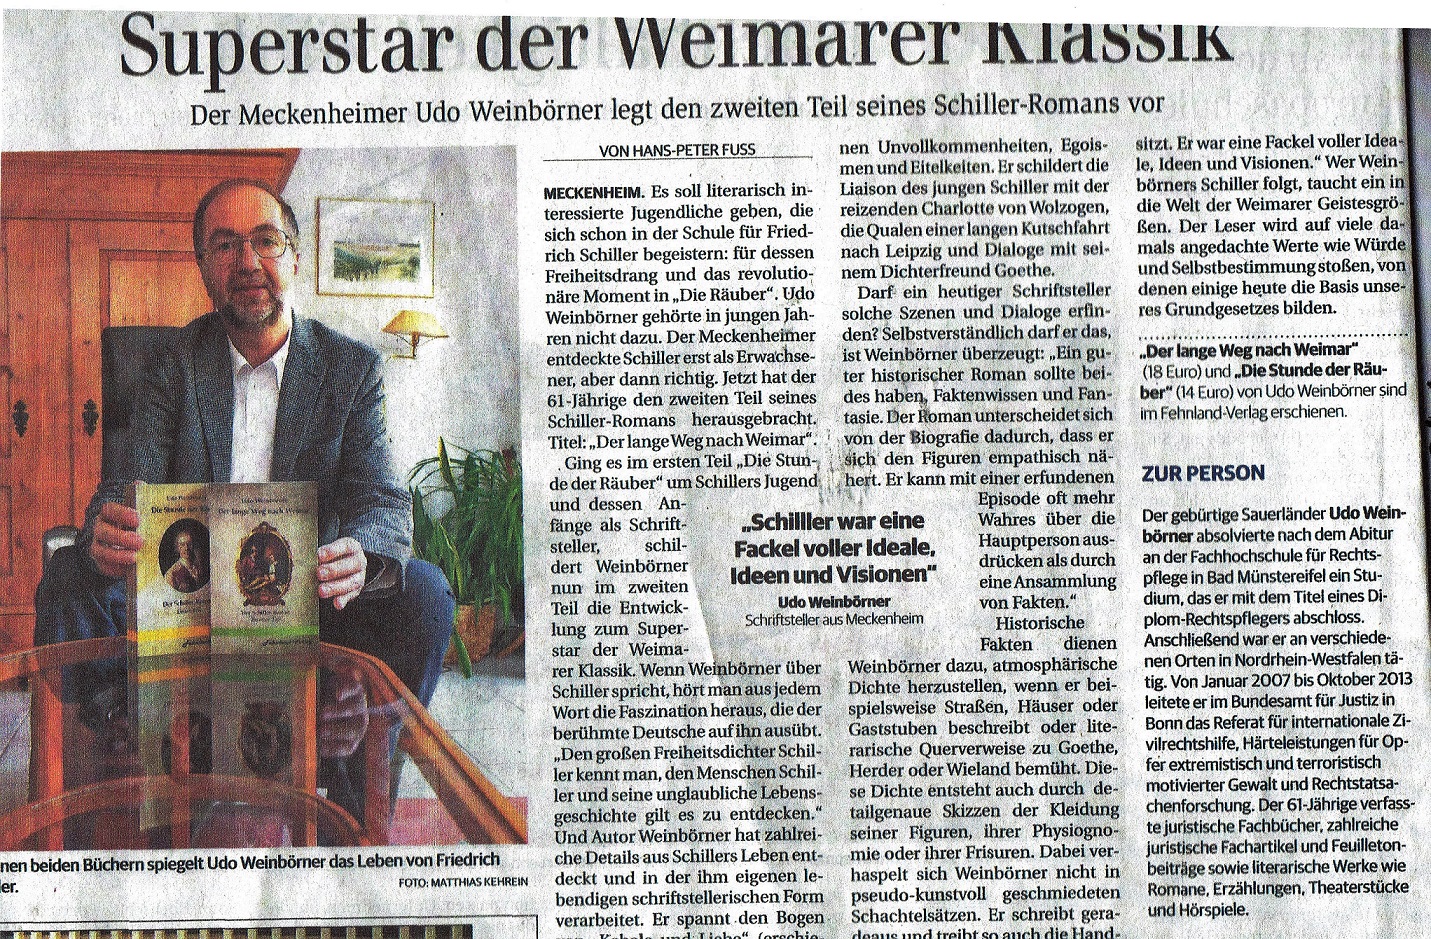 Artikel General Anzeiger 7.11.2020 Roman Der lange Weg nach Weimar von Udo Weinbörner Ausschnitt